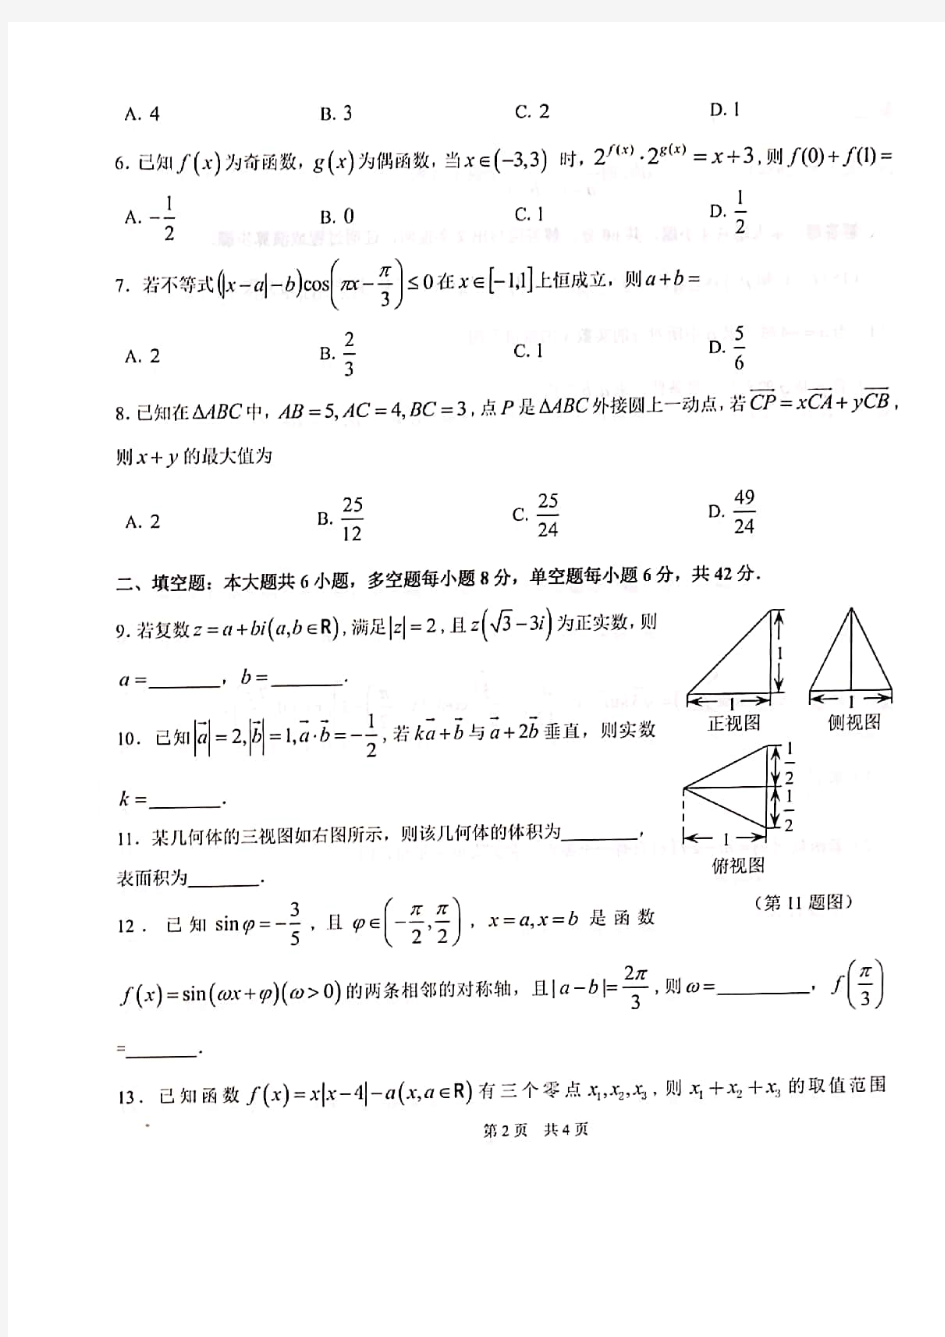 清华大学2020年9月中学生标准学术能力基础性测试(THUSSAT)数学试卷(A)及答案